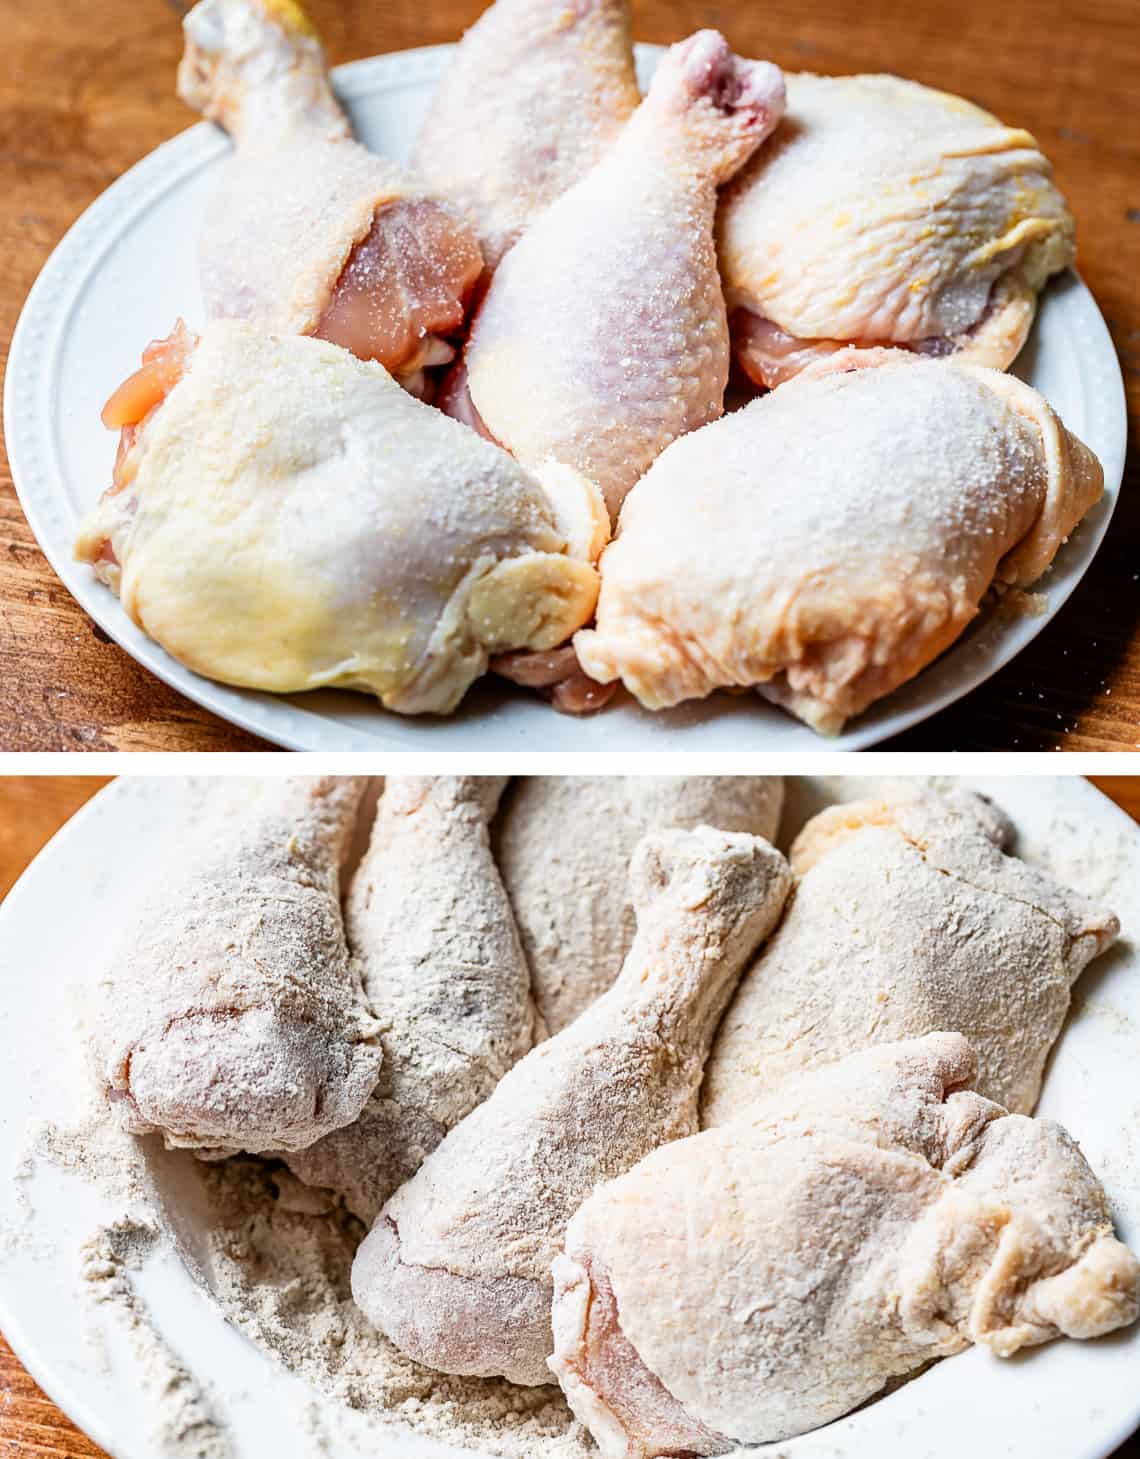 top raw bone in chicken, bottom same chicken pieces dredged in flour mixture.